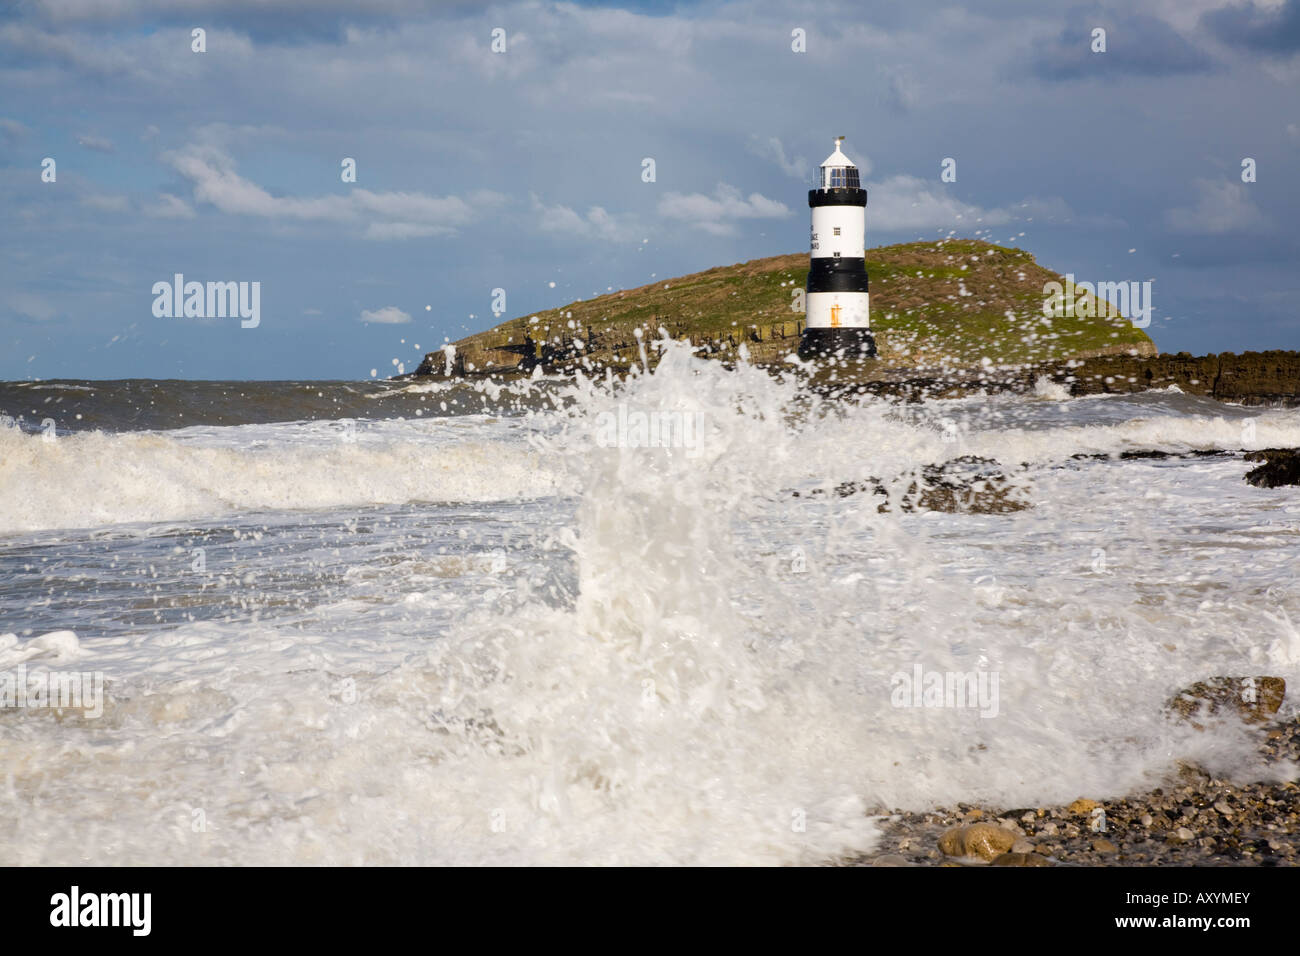 Raues Meer bei windigem Wetter im Leuchtturm Penmon mit großen Wellen, die auf Felsen an der wilden Küste abstürzen. Penmon Point Anglesey North Wales Großbritannien Stockfoto